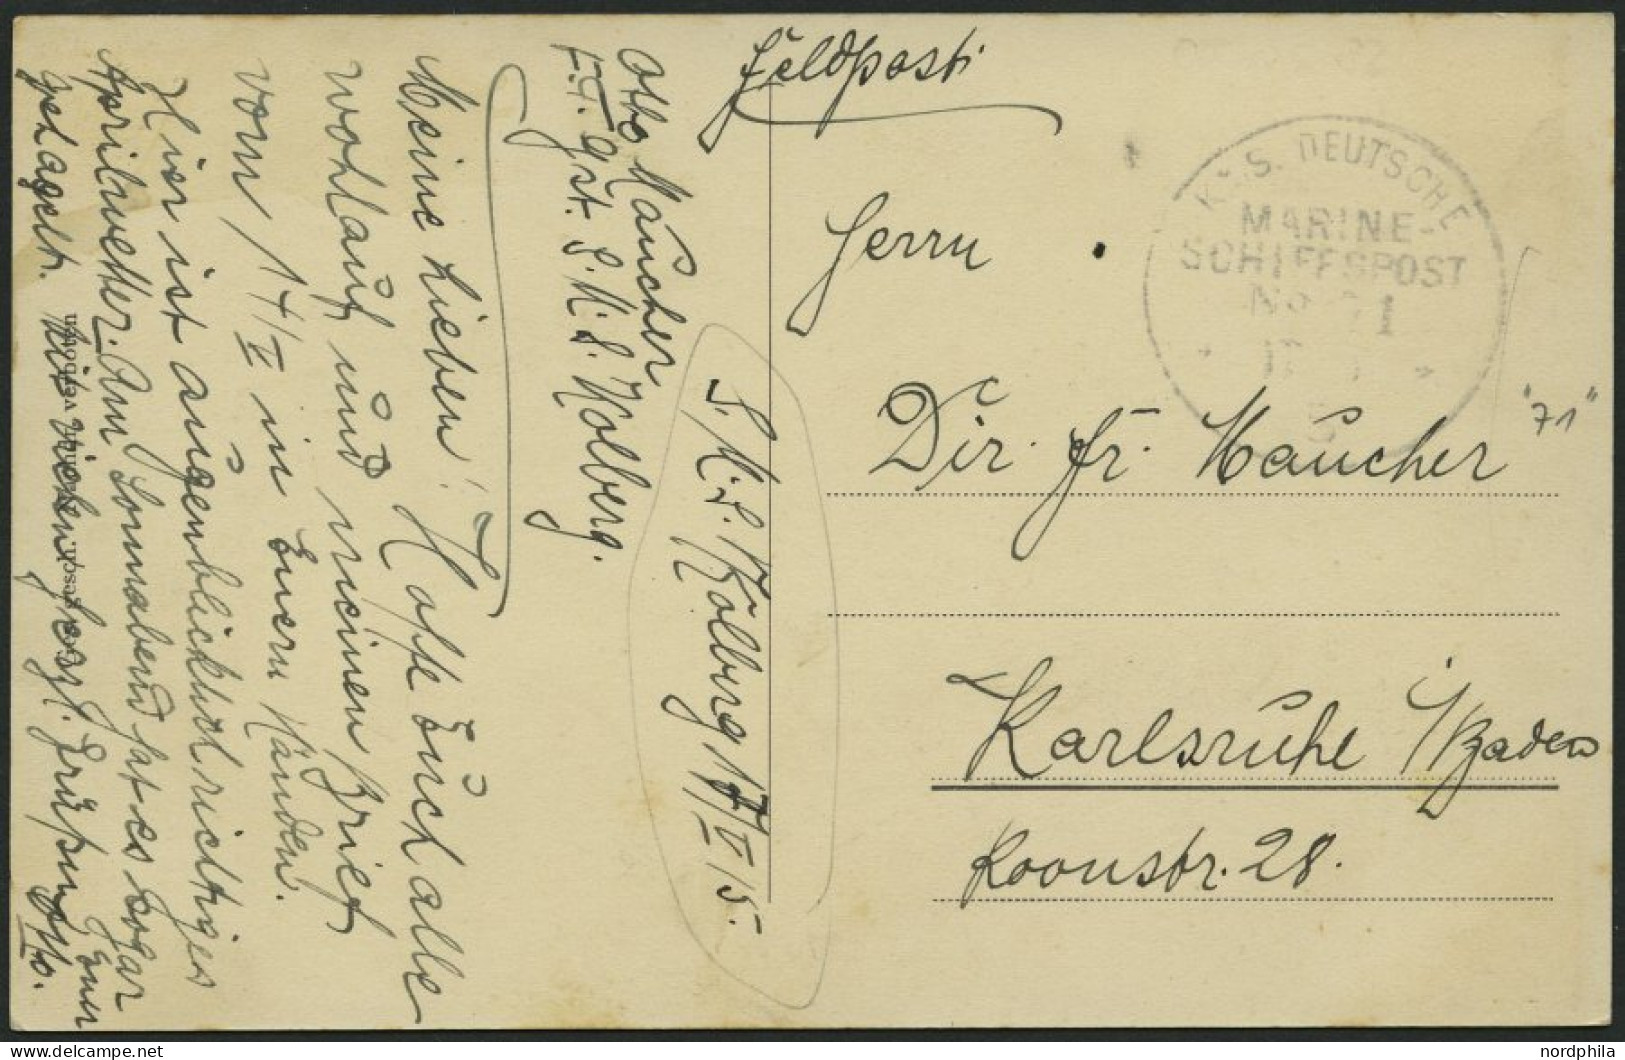 MSP VON 1914 - 1918 71 (Kleiner Kreuzer KOLBERG), 17.5.1915, Feldpost-Ansichtskarte (S.M.S. Emden) Von Bord Der Kolberg, - Marittimi